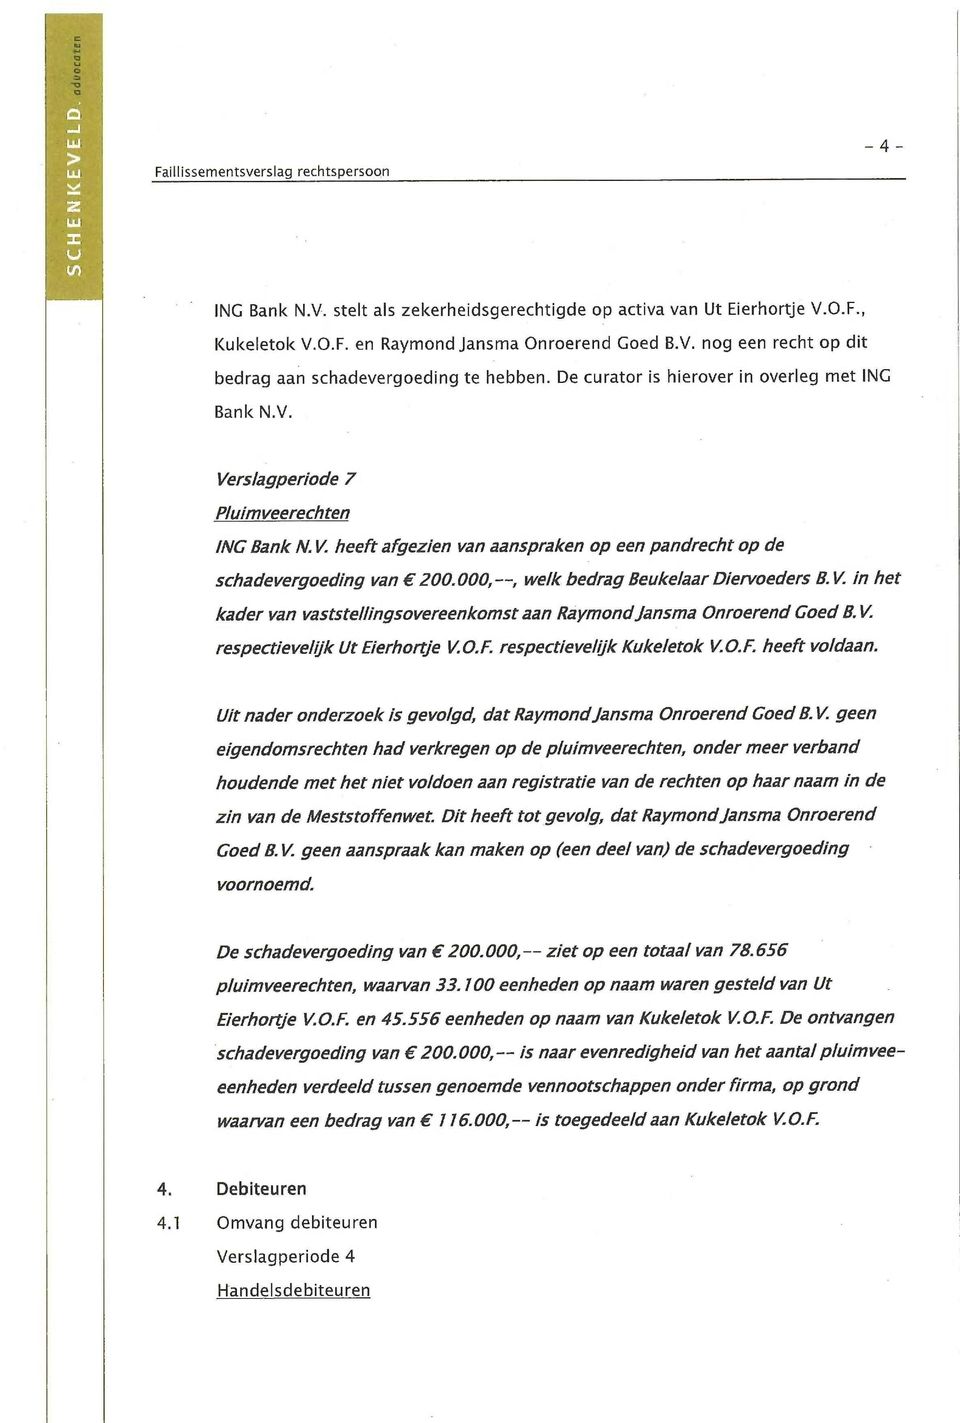 000,--, welk bedrag Beukelaar Diervoeders B. V. in het kader van vaststellingsovereenkomst aan Raymond Jansma Onroerend Coed B. V. respectievelijk Ut Eierhonje V.O.F. respectievelijk Kukeletok V.O.F. heeft voldaan.